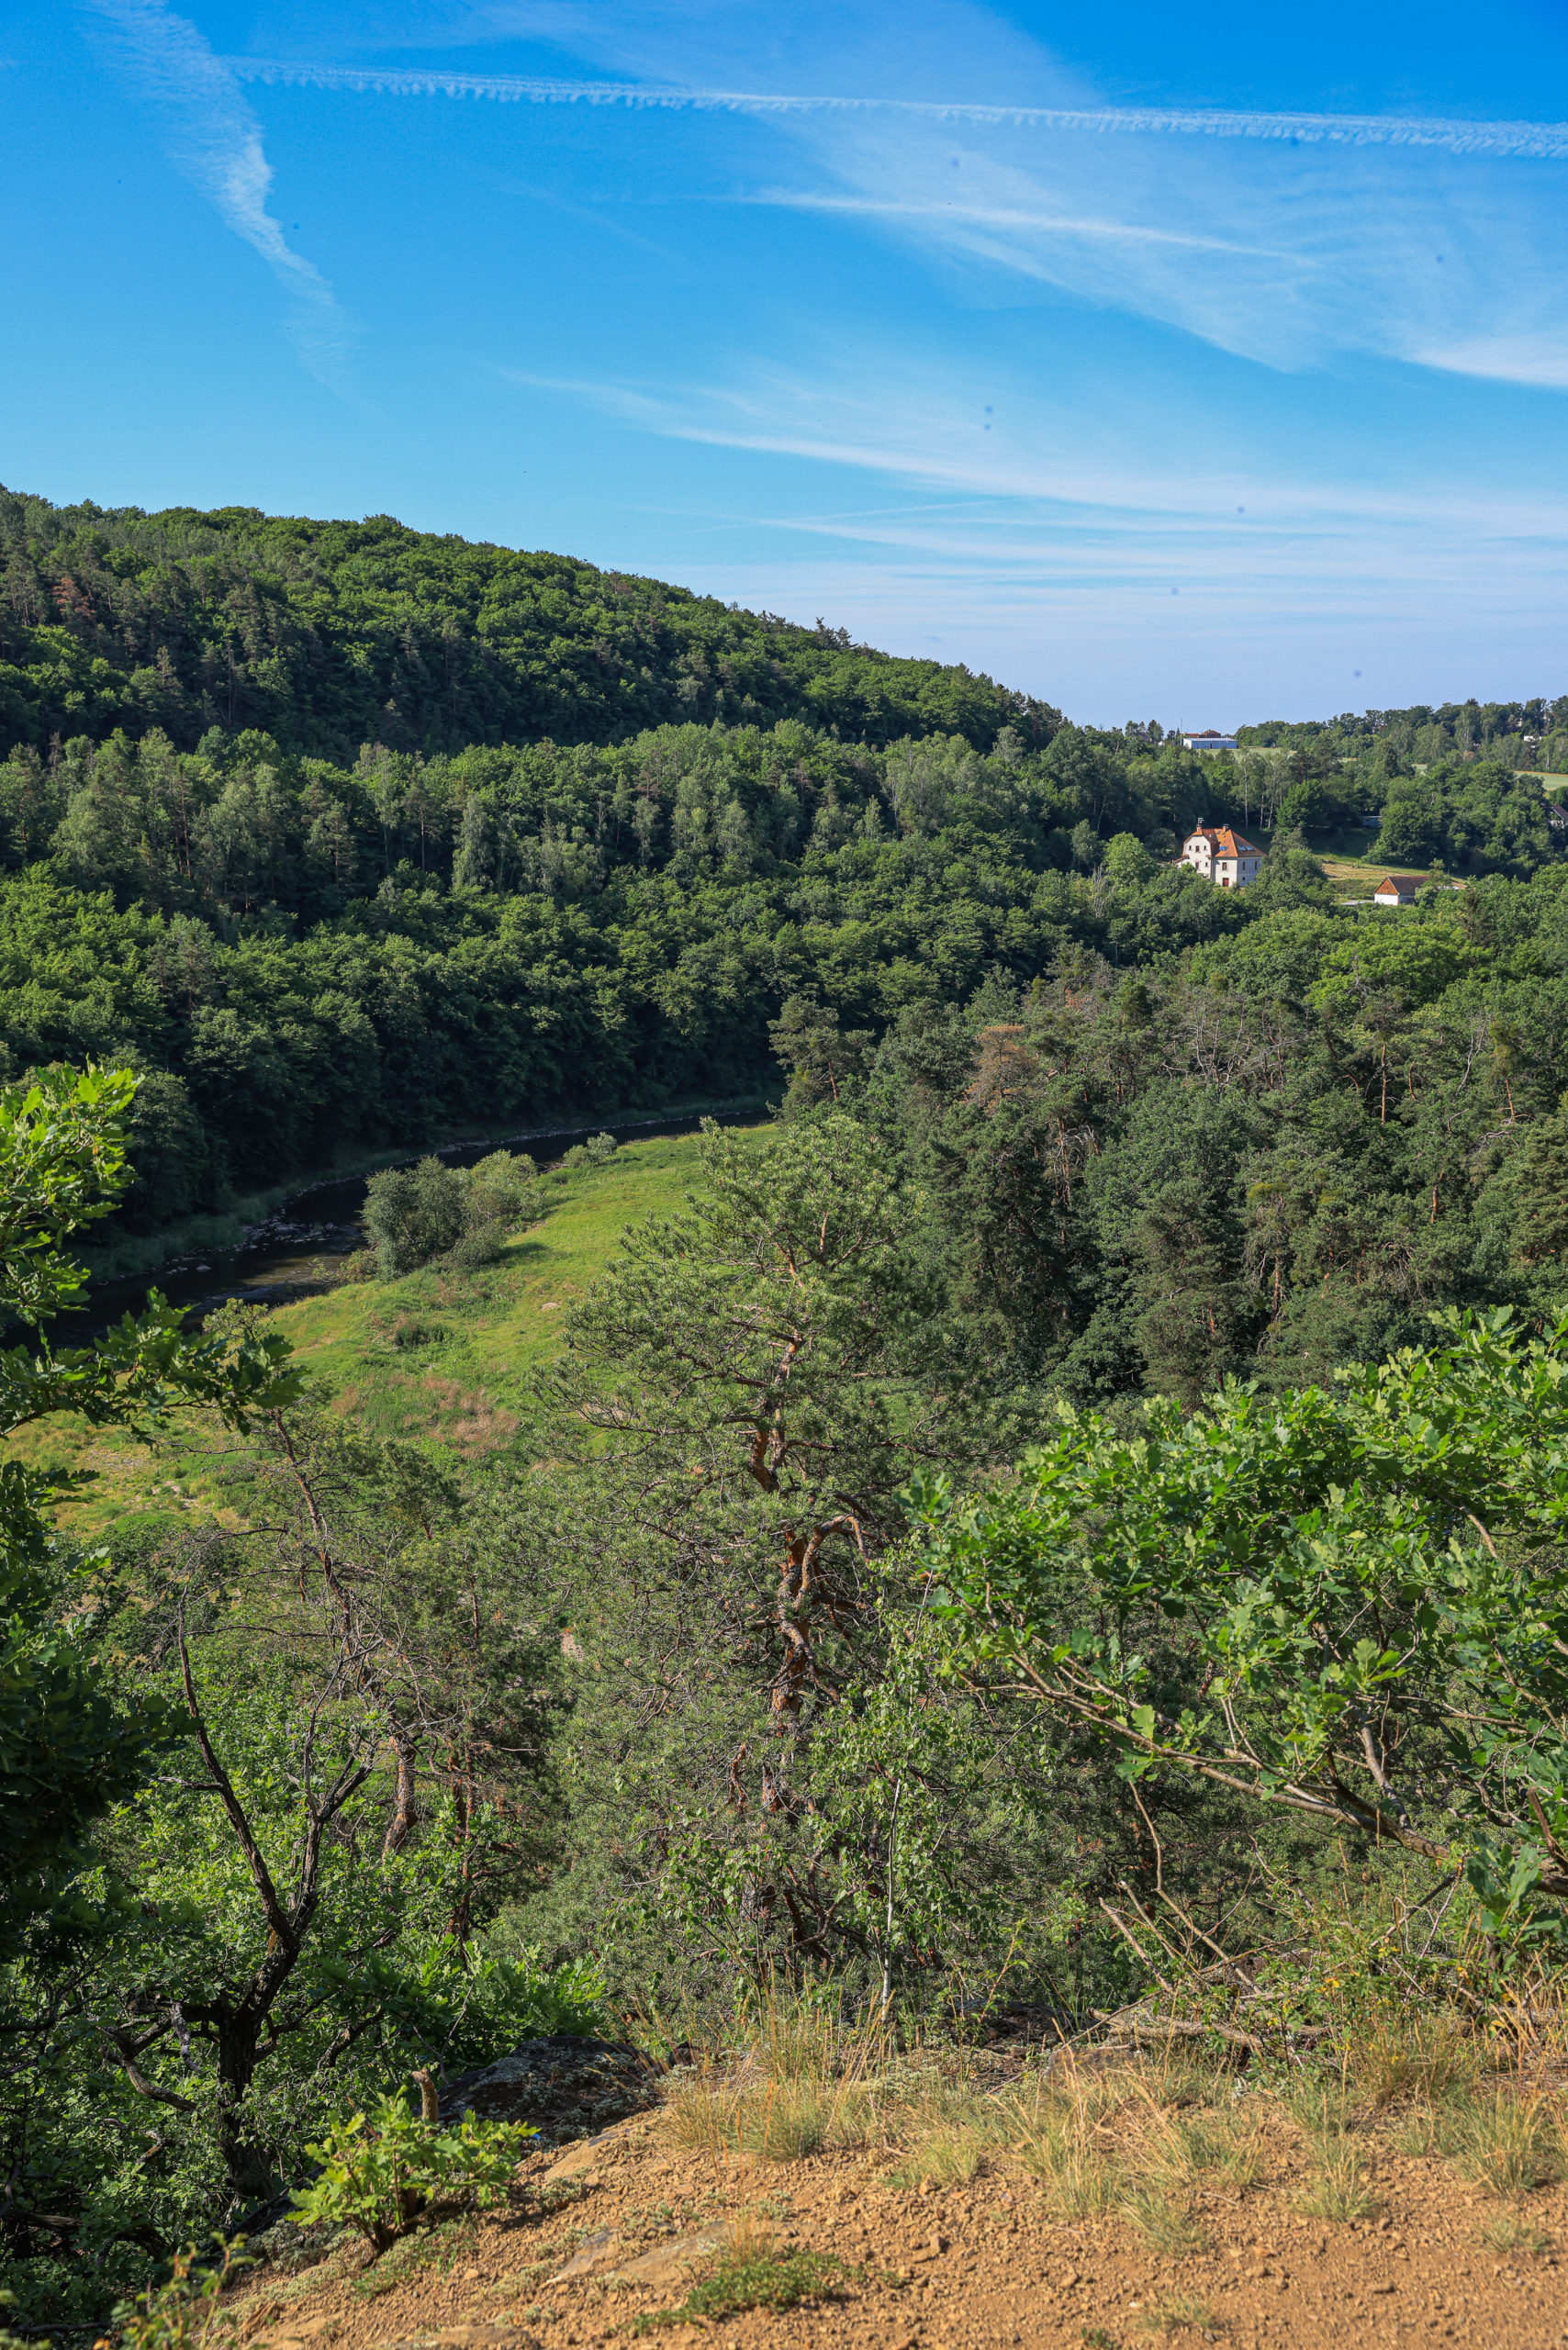 <h1>Zábělá – pohled z vyhlídky Kozí Bouda</h1><br />
Pohled na zalesněné svahy nad Berounkou. V popředí viditelný prudký svah směřující dolu. V pozadí zasahuje zástavba Bukovce.